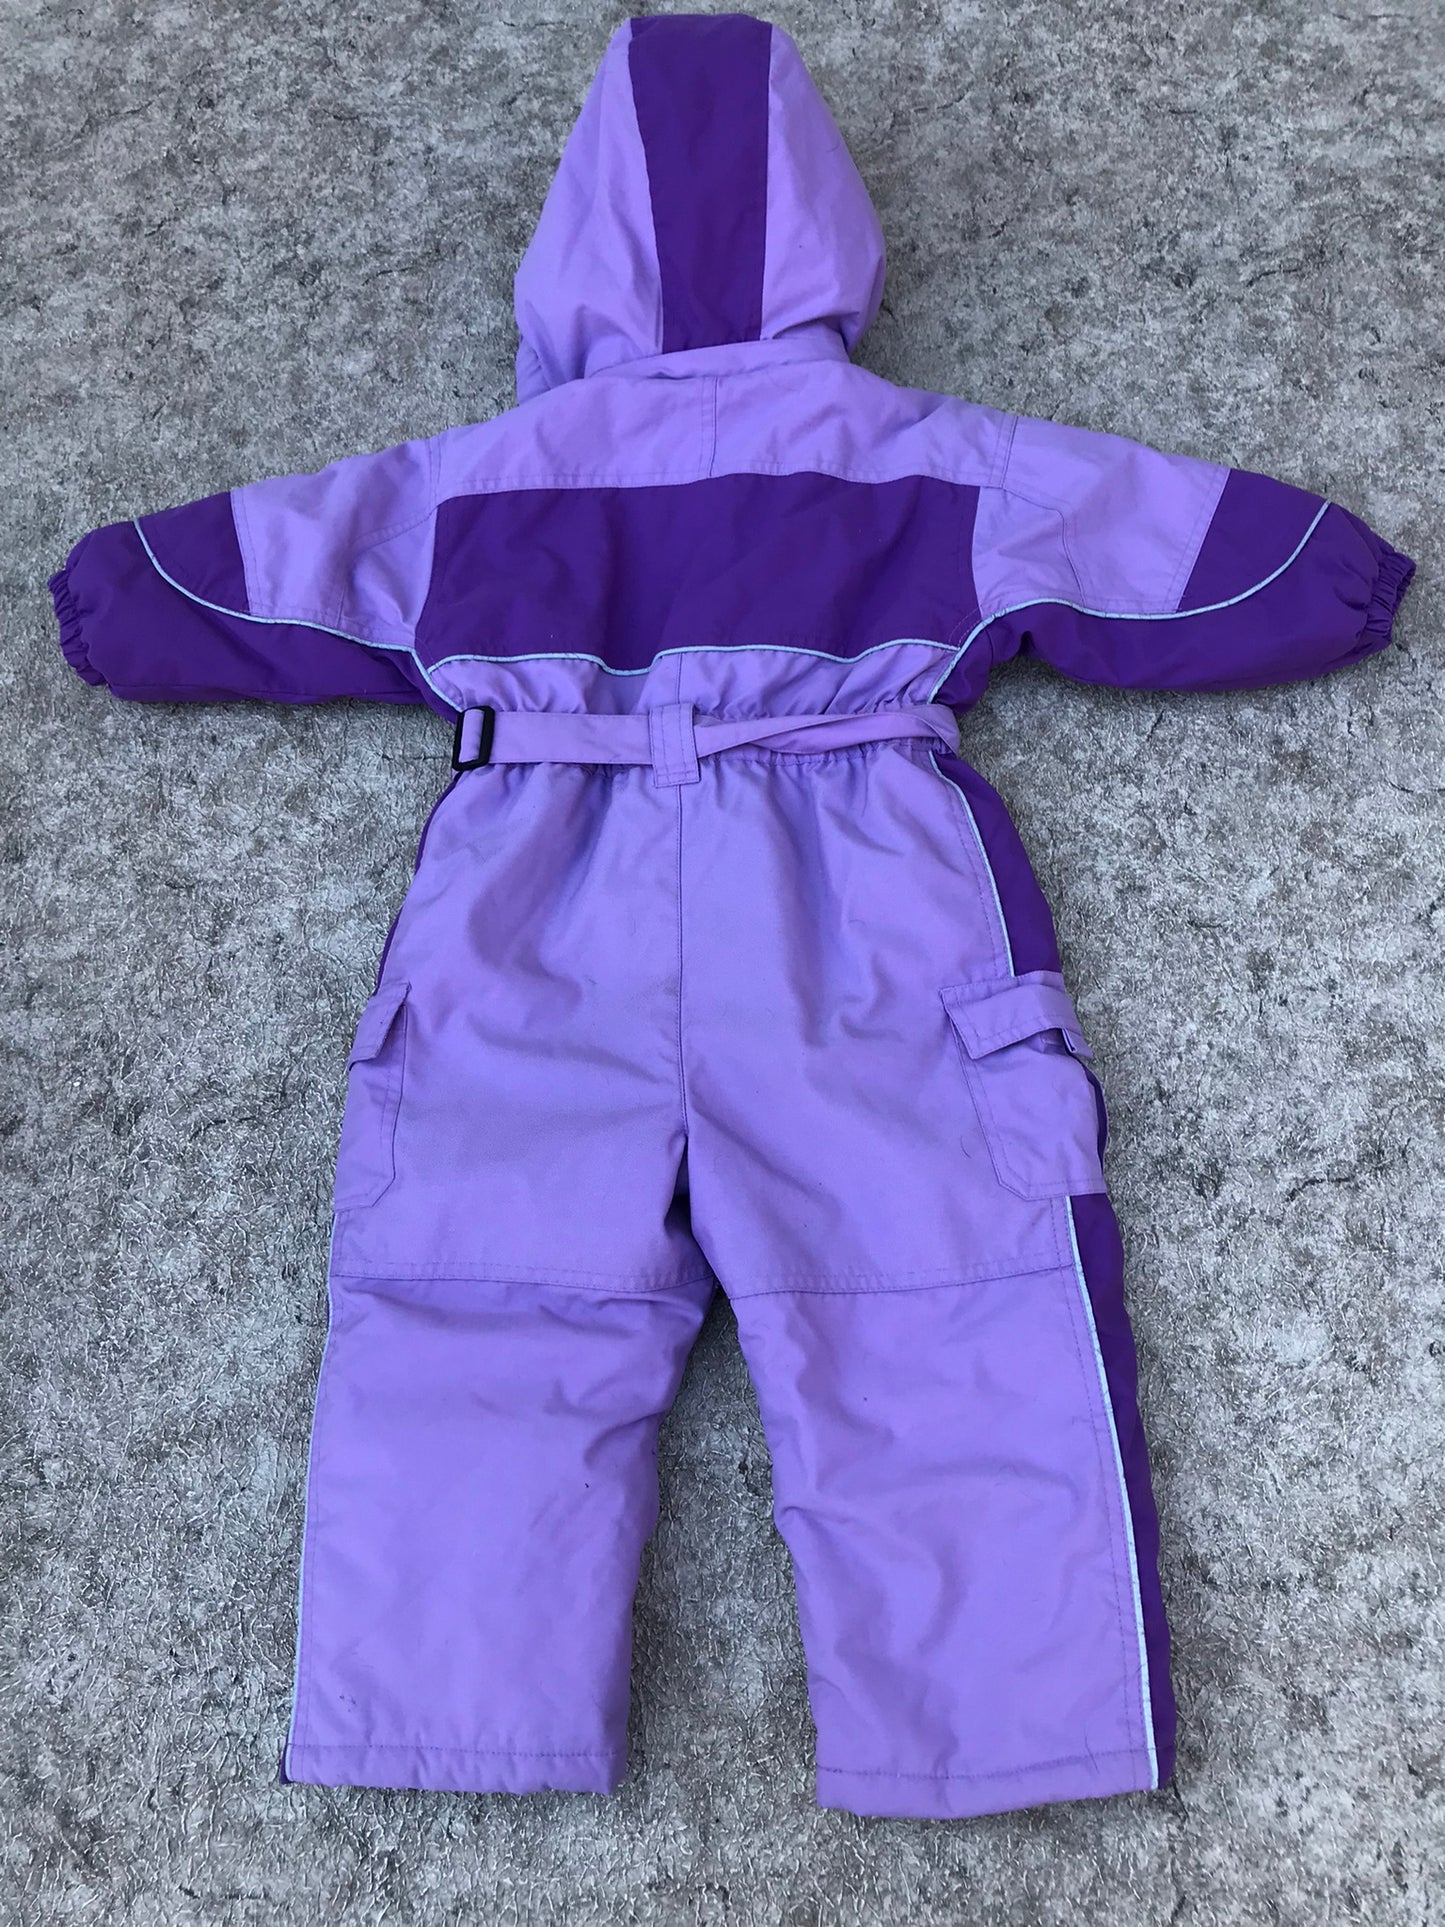 Snowsuit Child Size 24 month Purple The Children's Place 1 pc